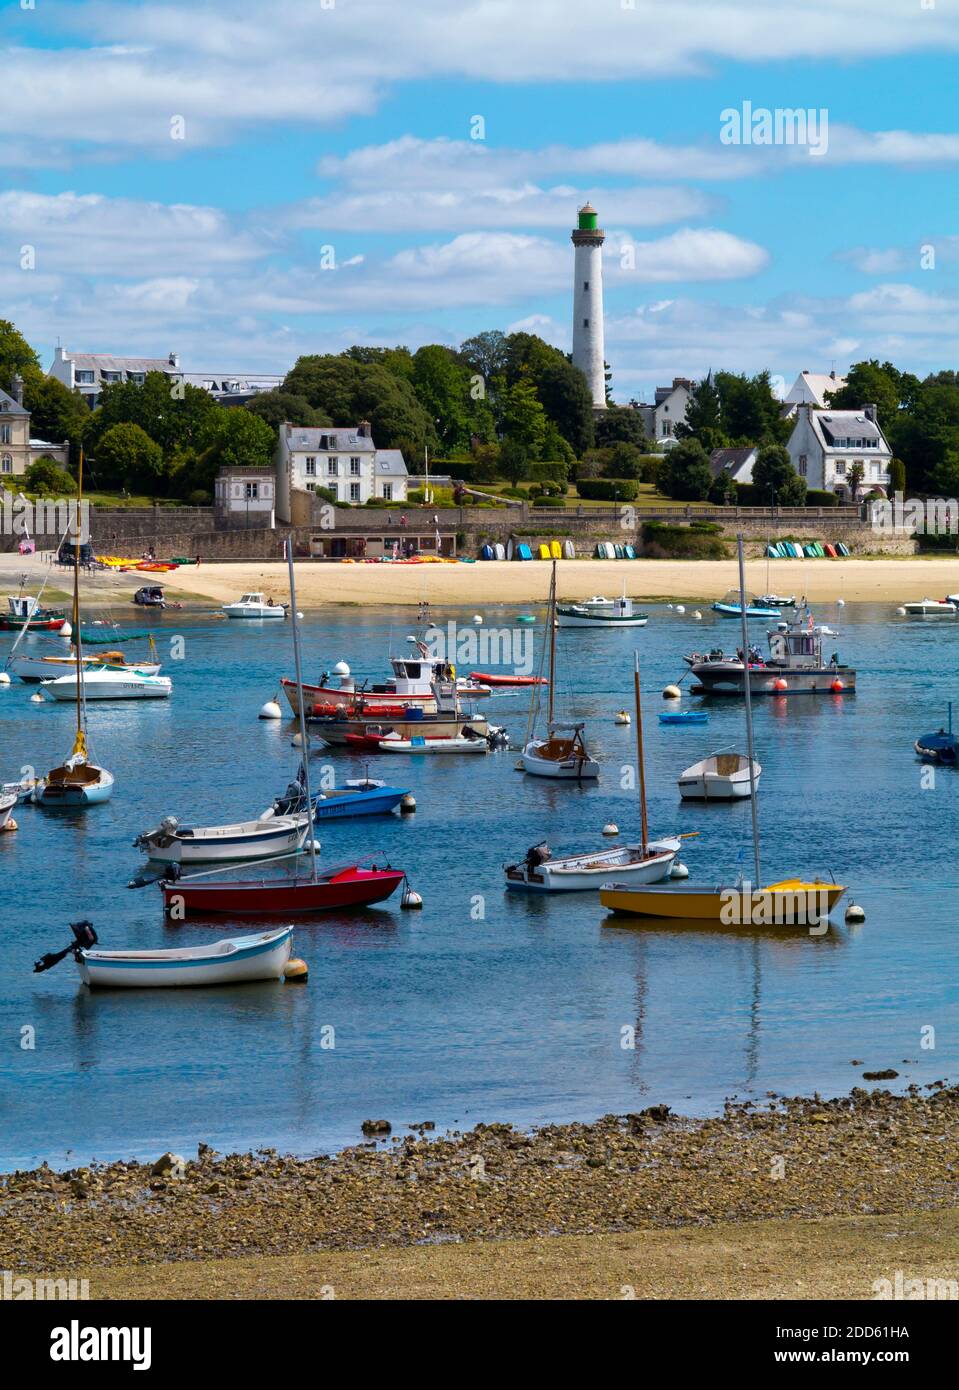 Vue d'été de Benodet ville côtière sur l'estuaire de l'Odet dans le Finistère Bretagne nord-ouest de la France avec des bateaux amarrés dans le port. Banque D'Images